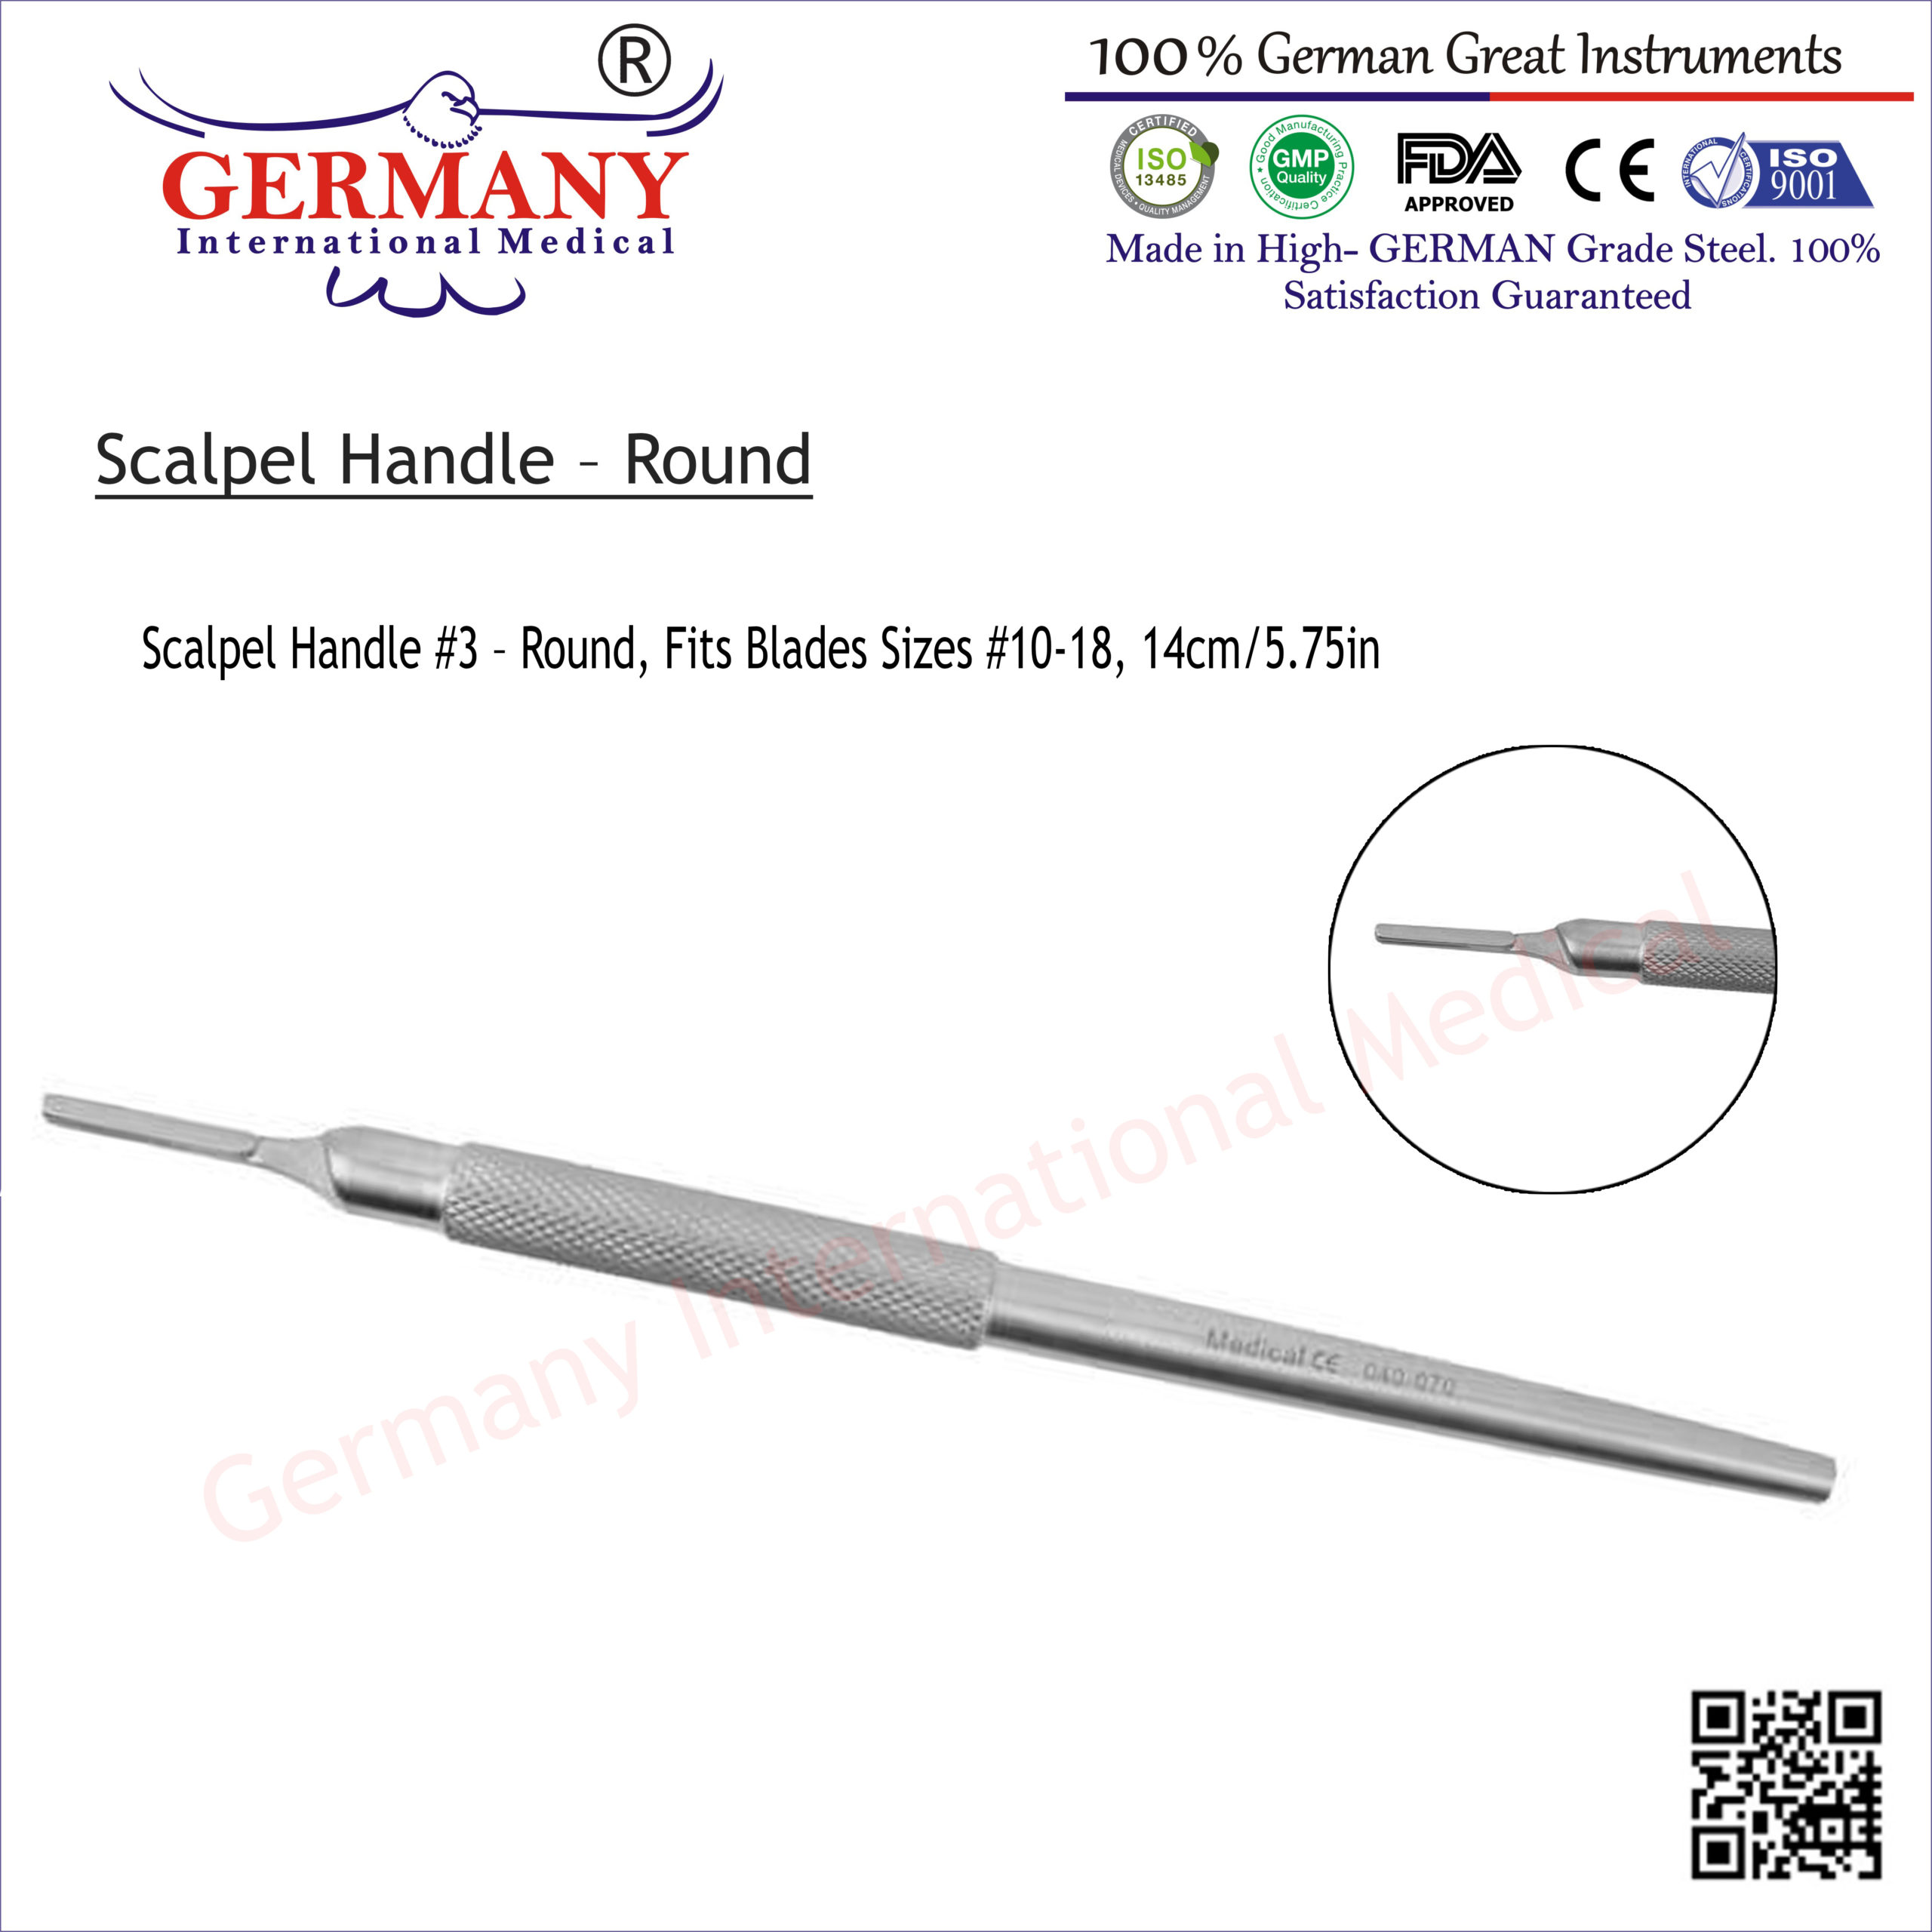 Scalpel blade holder - round